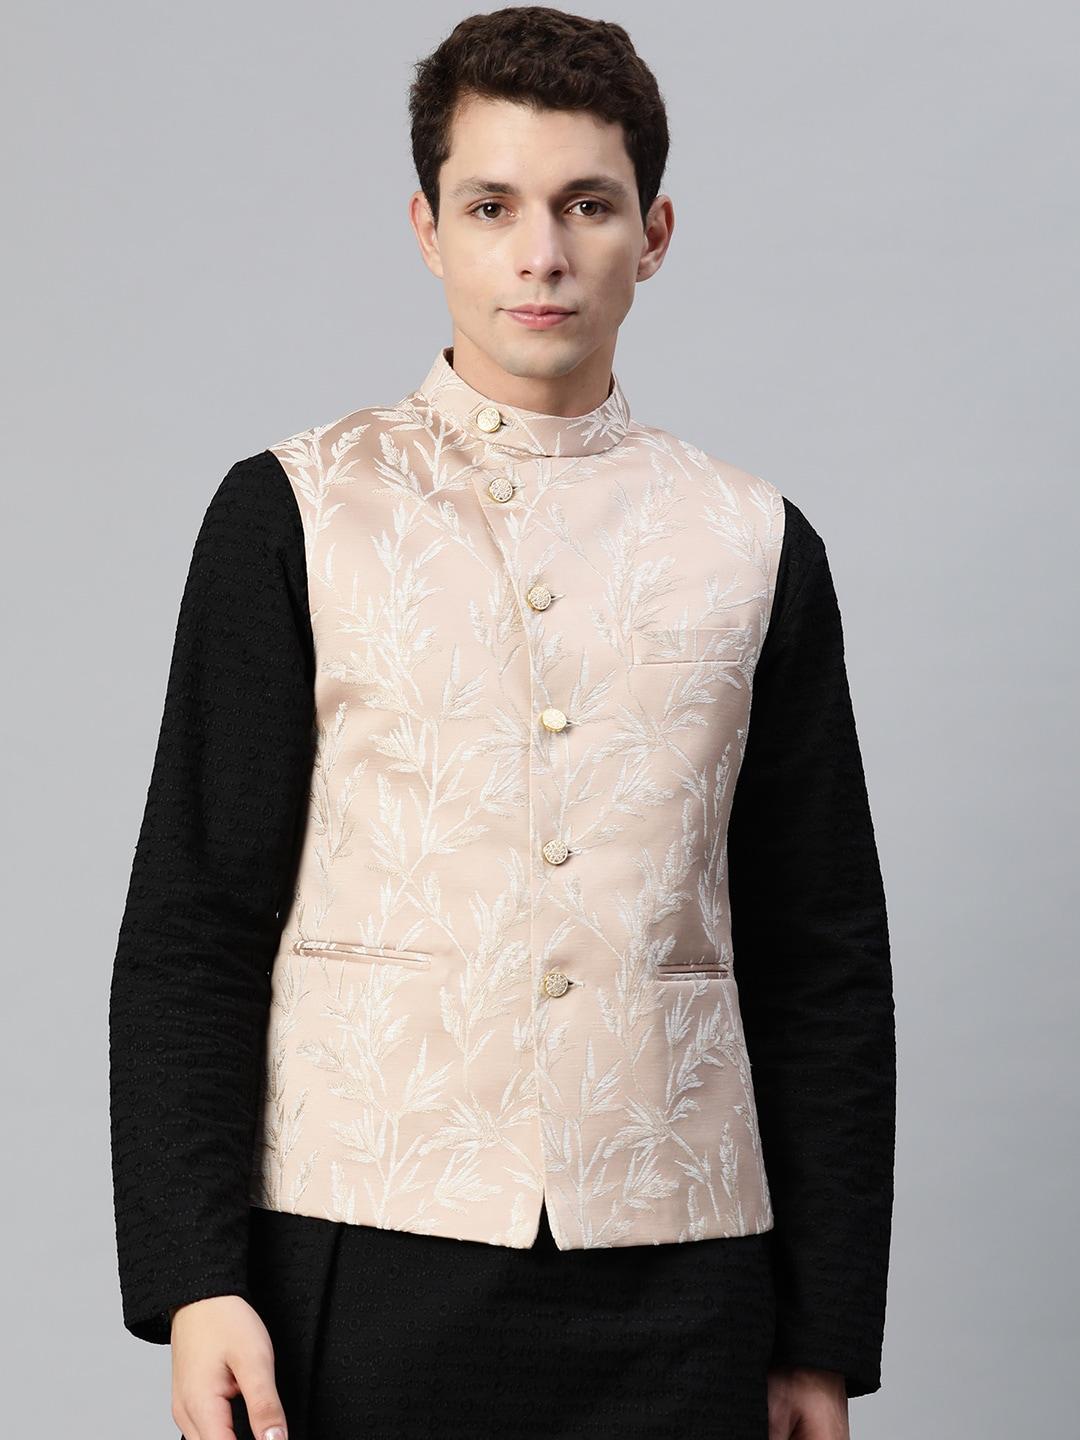 manq-men-woven-design-jaquard-silk-nehru-jacket